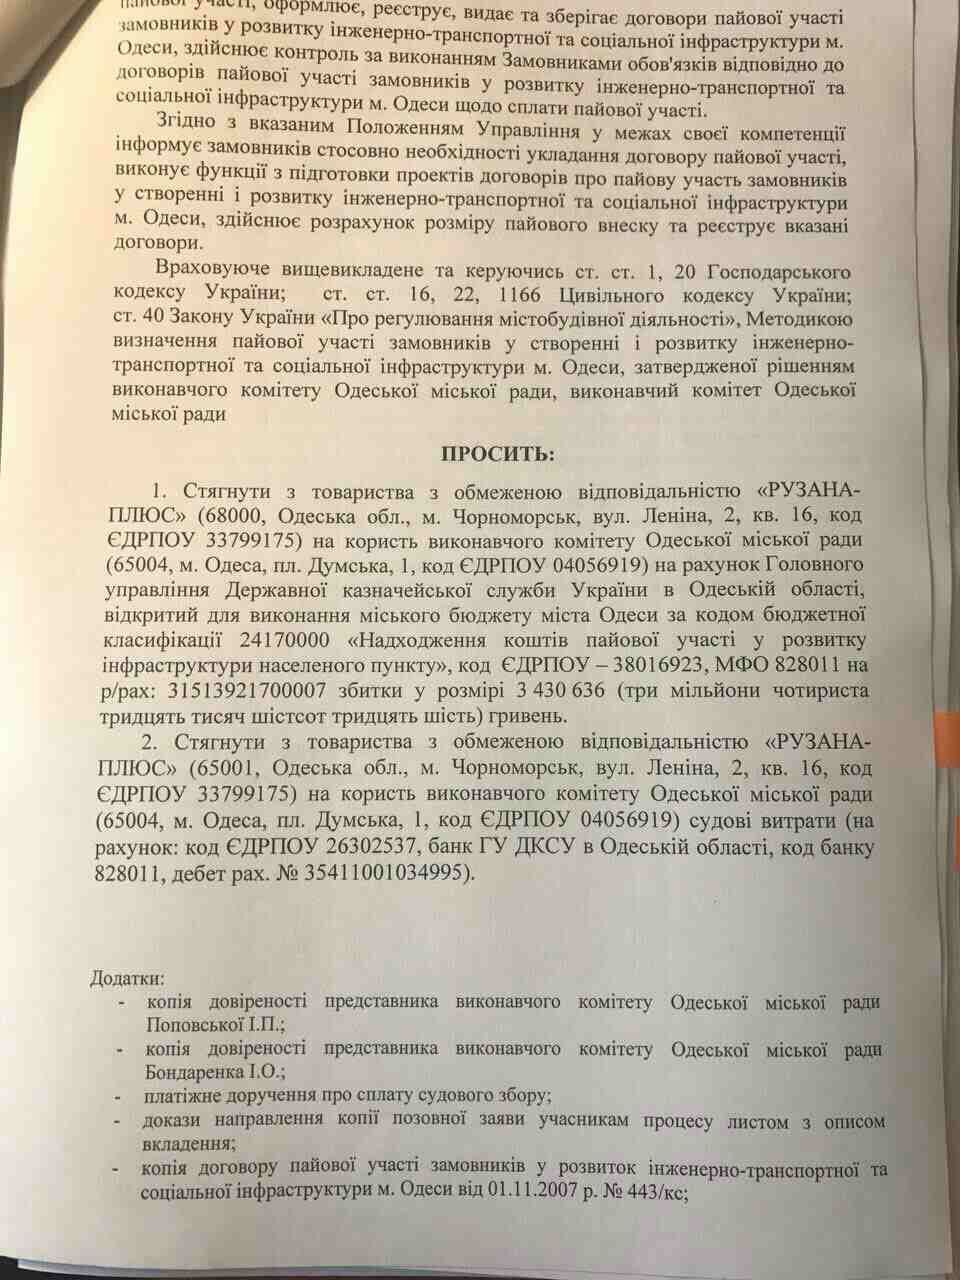 Мэрия Одессы через суд хочет взыскать у миллиардера Кивана деньги на развитие инфраструктуры